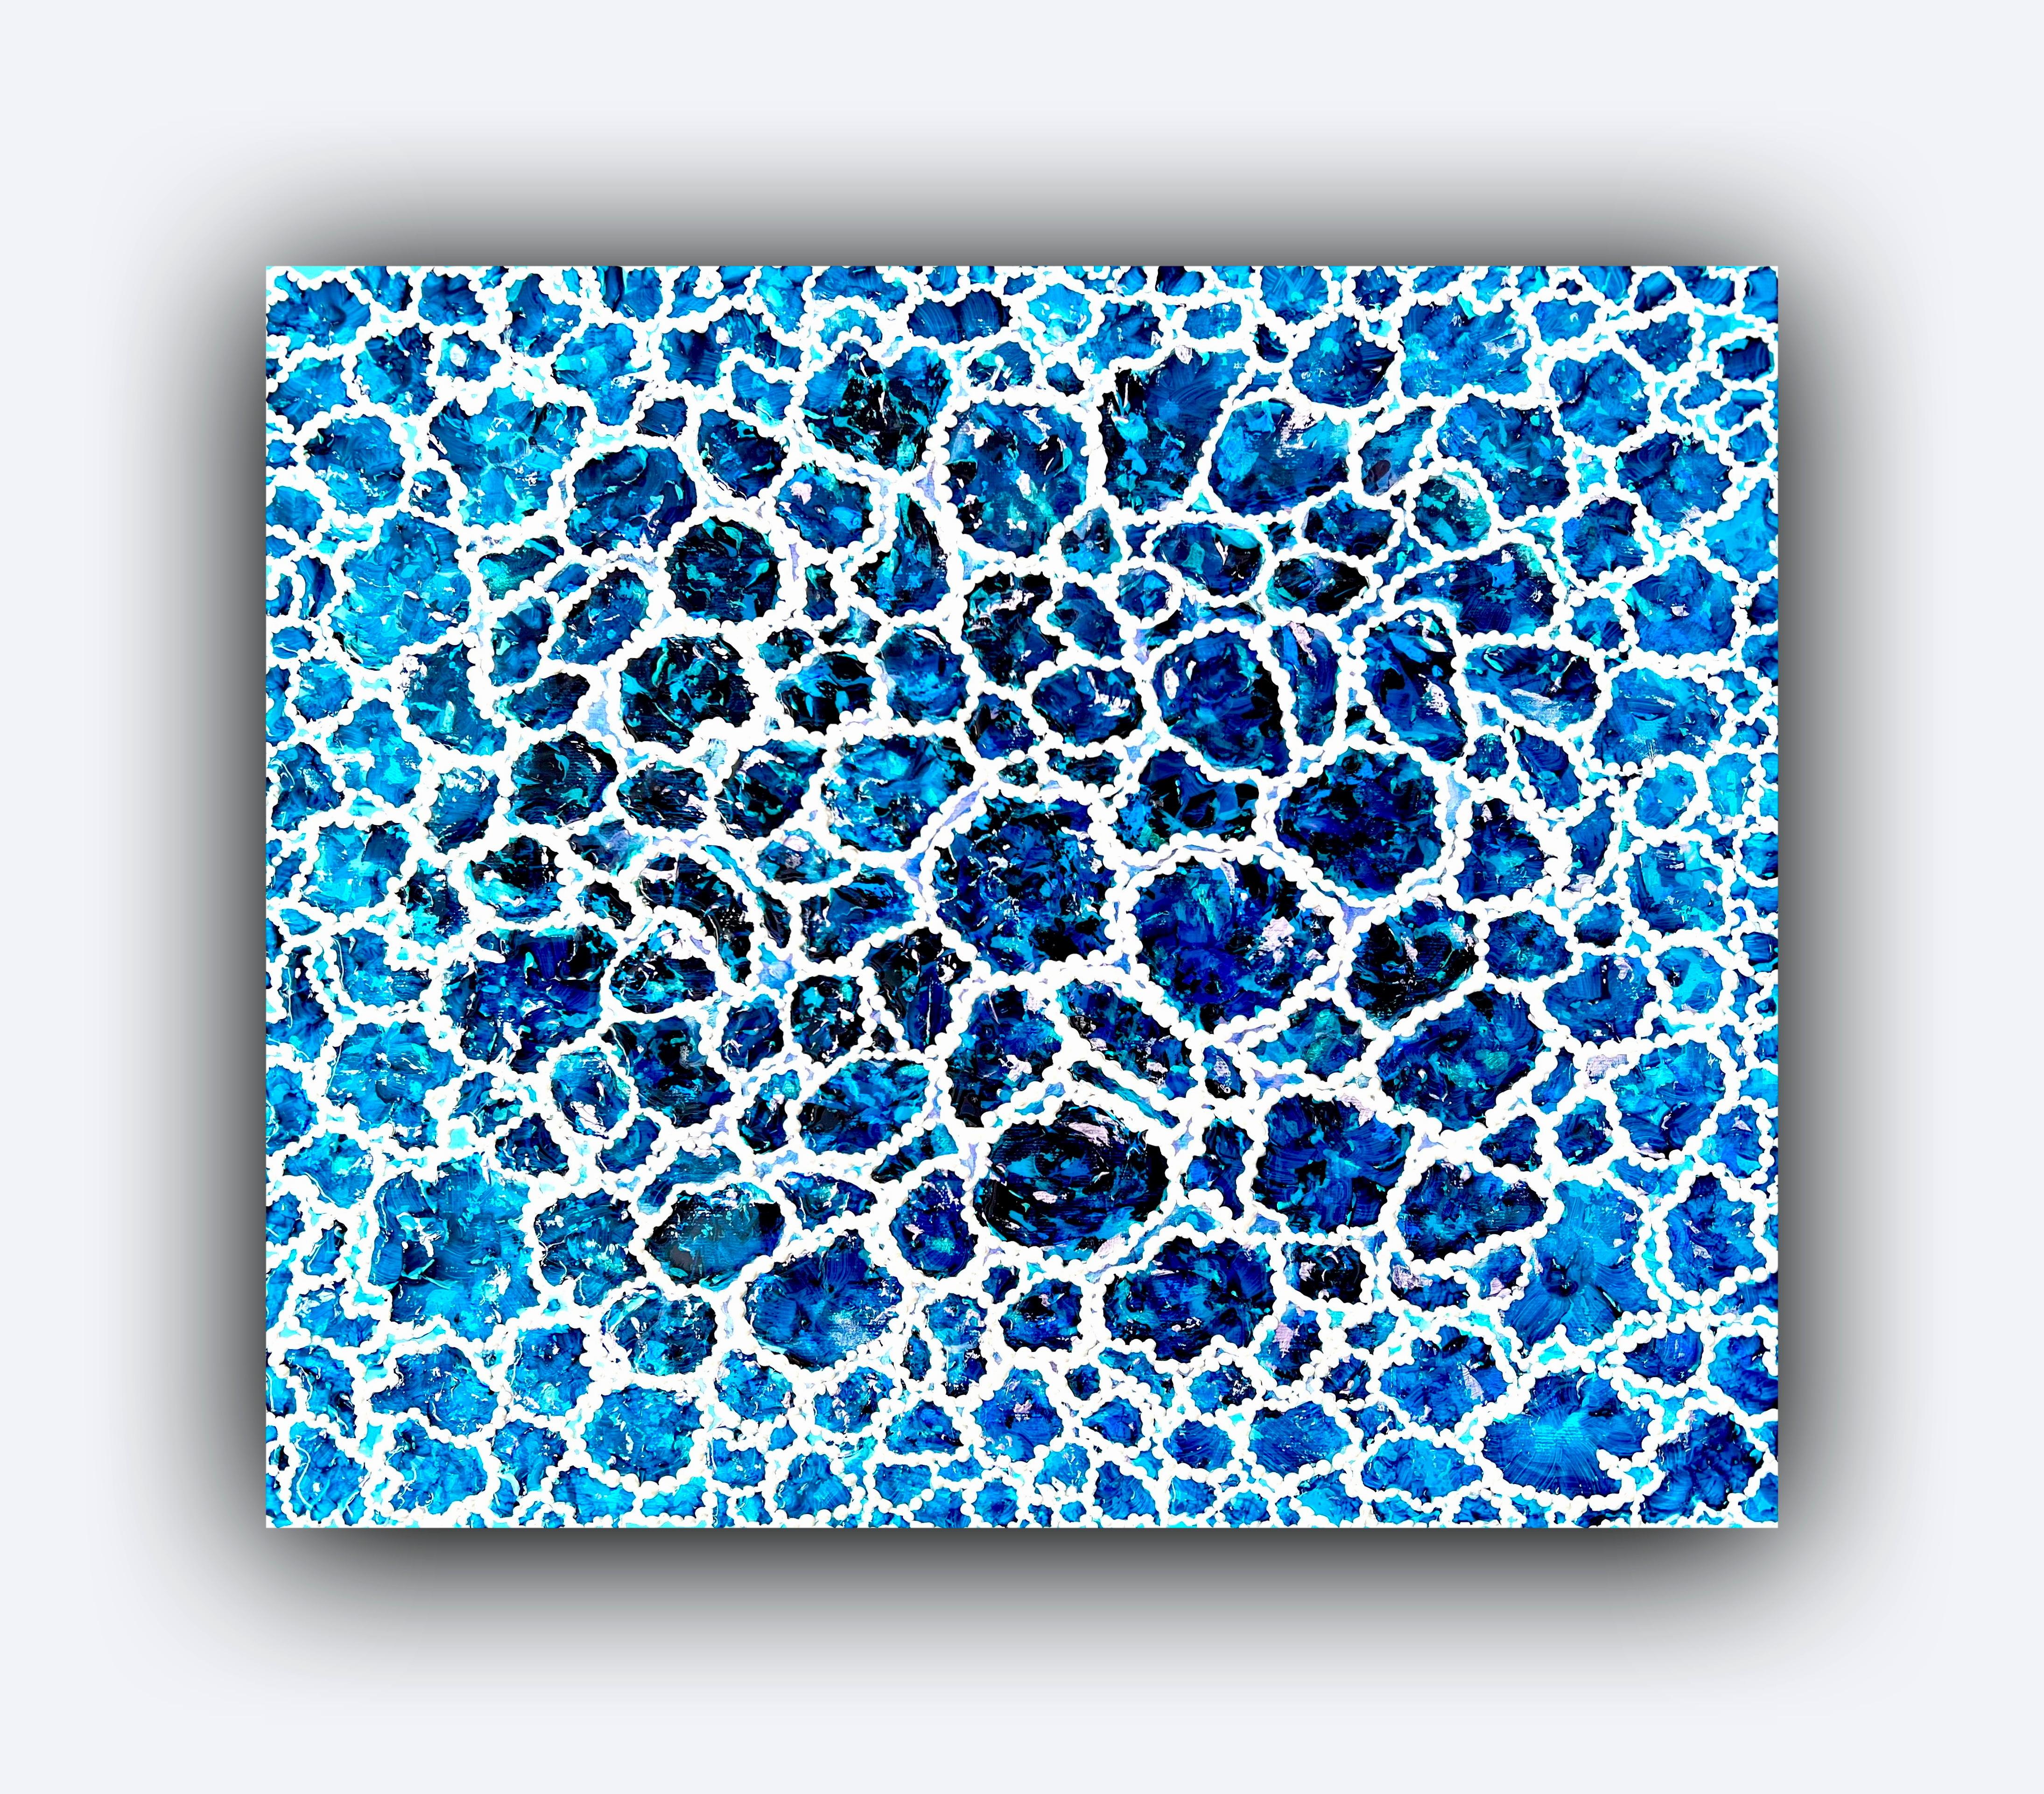 Blaue Lagune der Insel Miyako. Abstrakte Malerei. Wasser / Meer / Blau. 50x60cm 